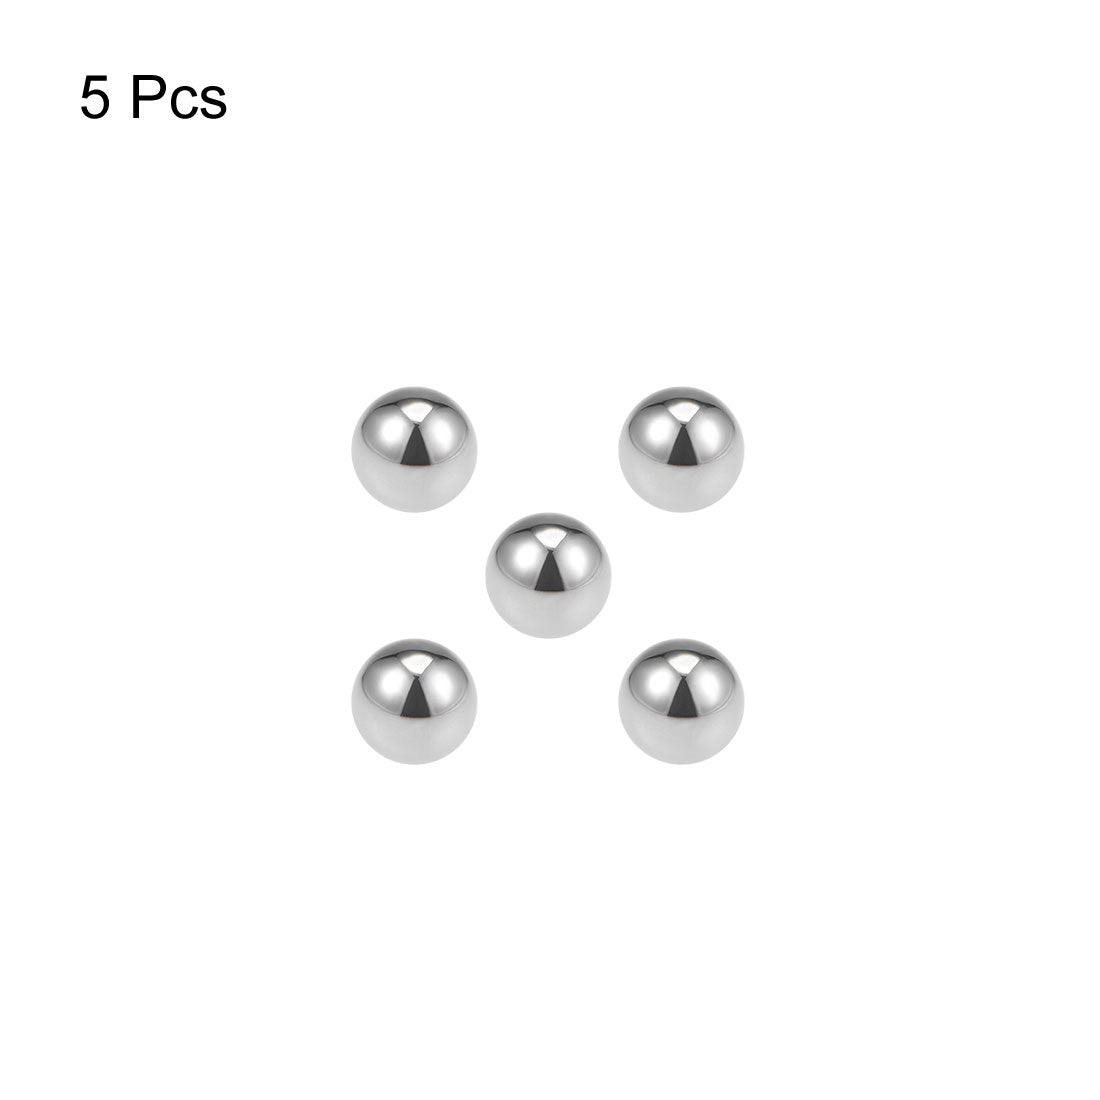 Uxcell Uxcell 3mm Bearing Balls Tungsten Carbide G25 Precision Balls 5pcs